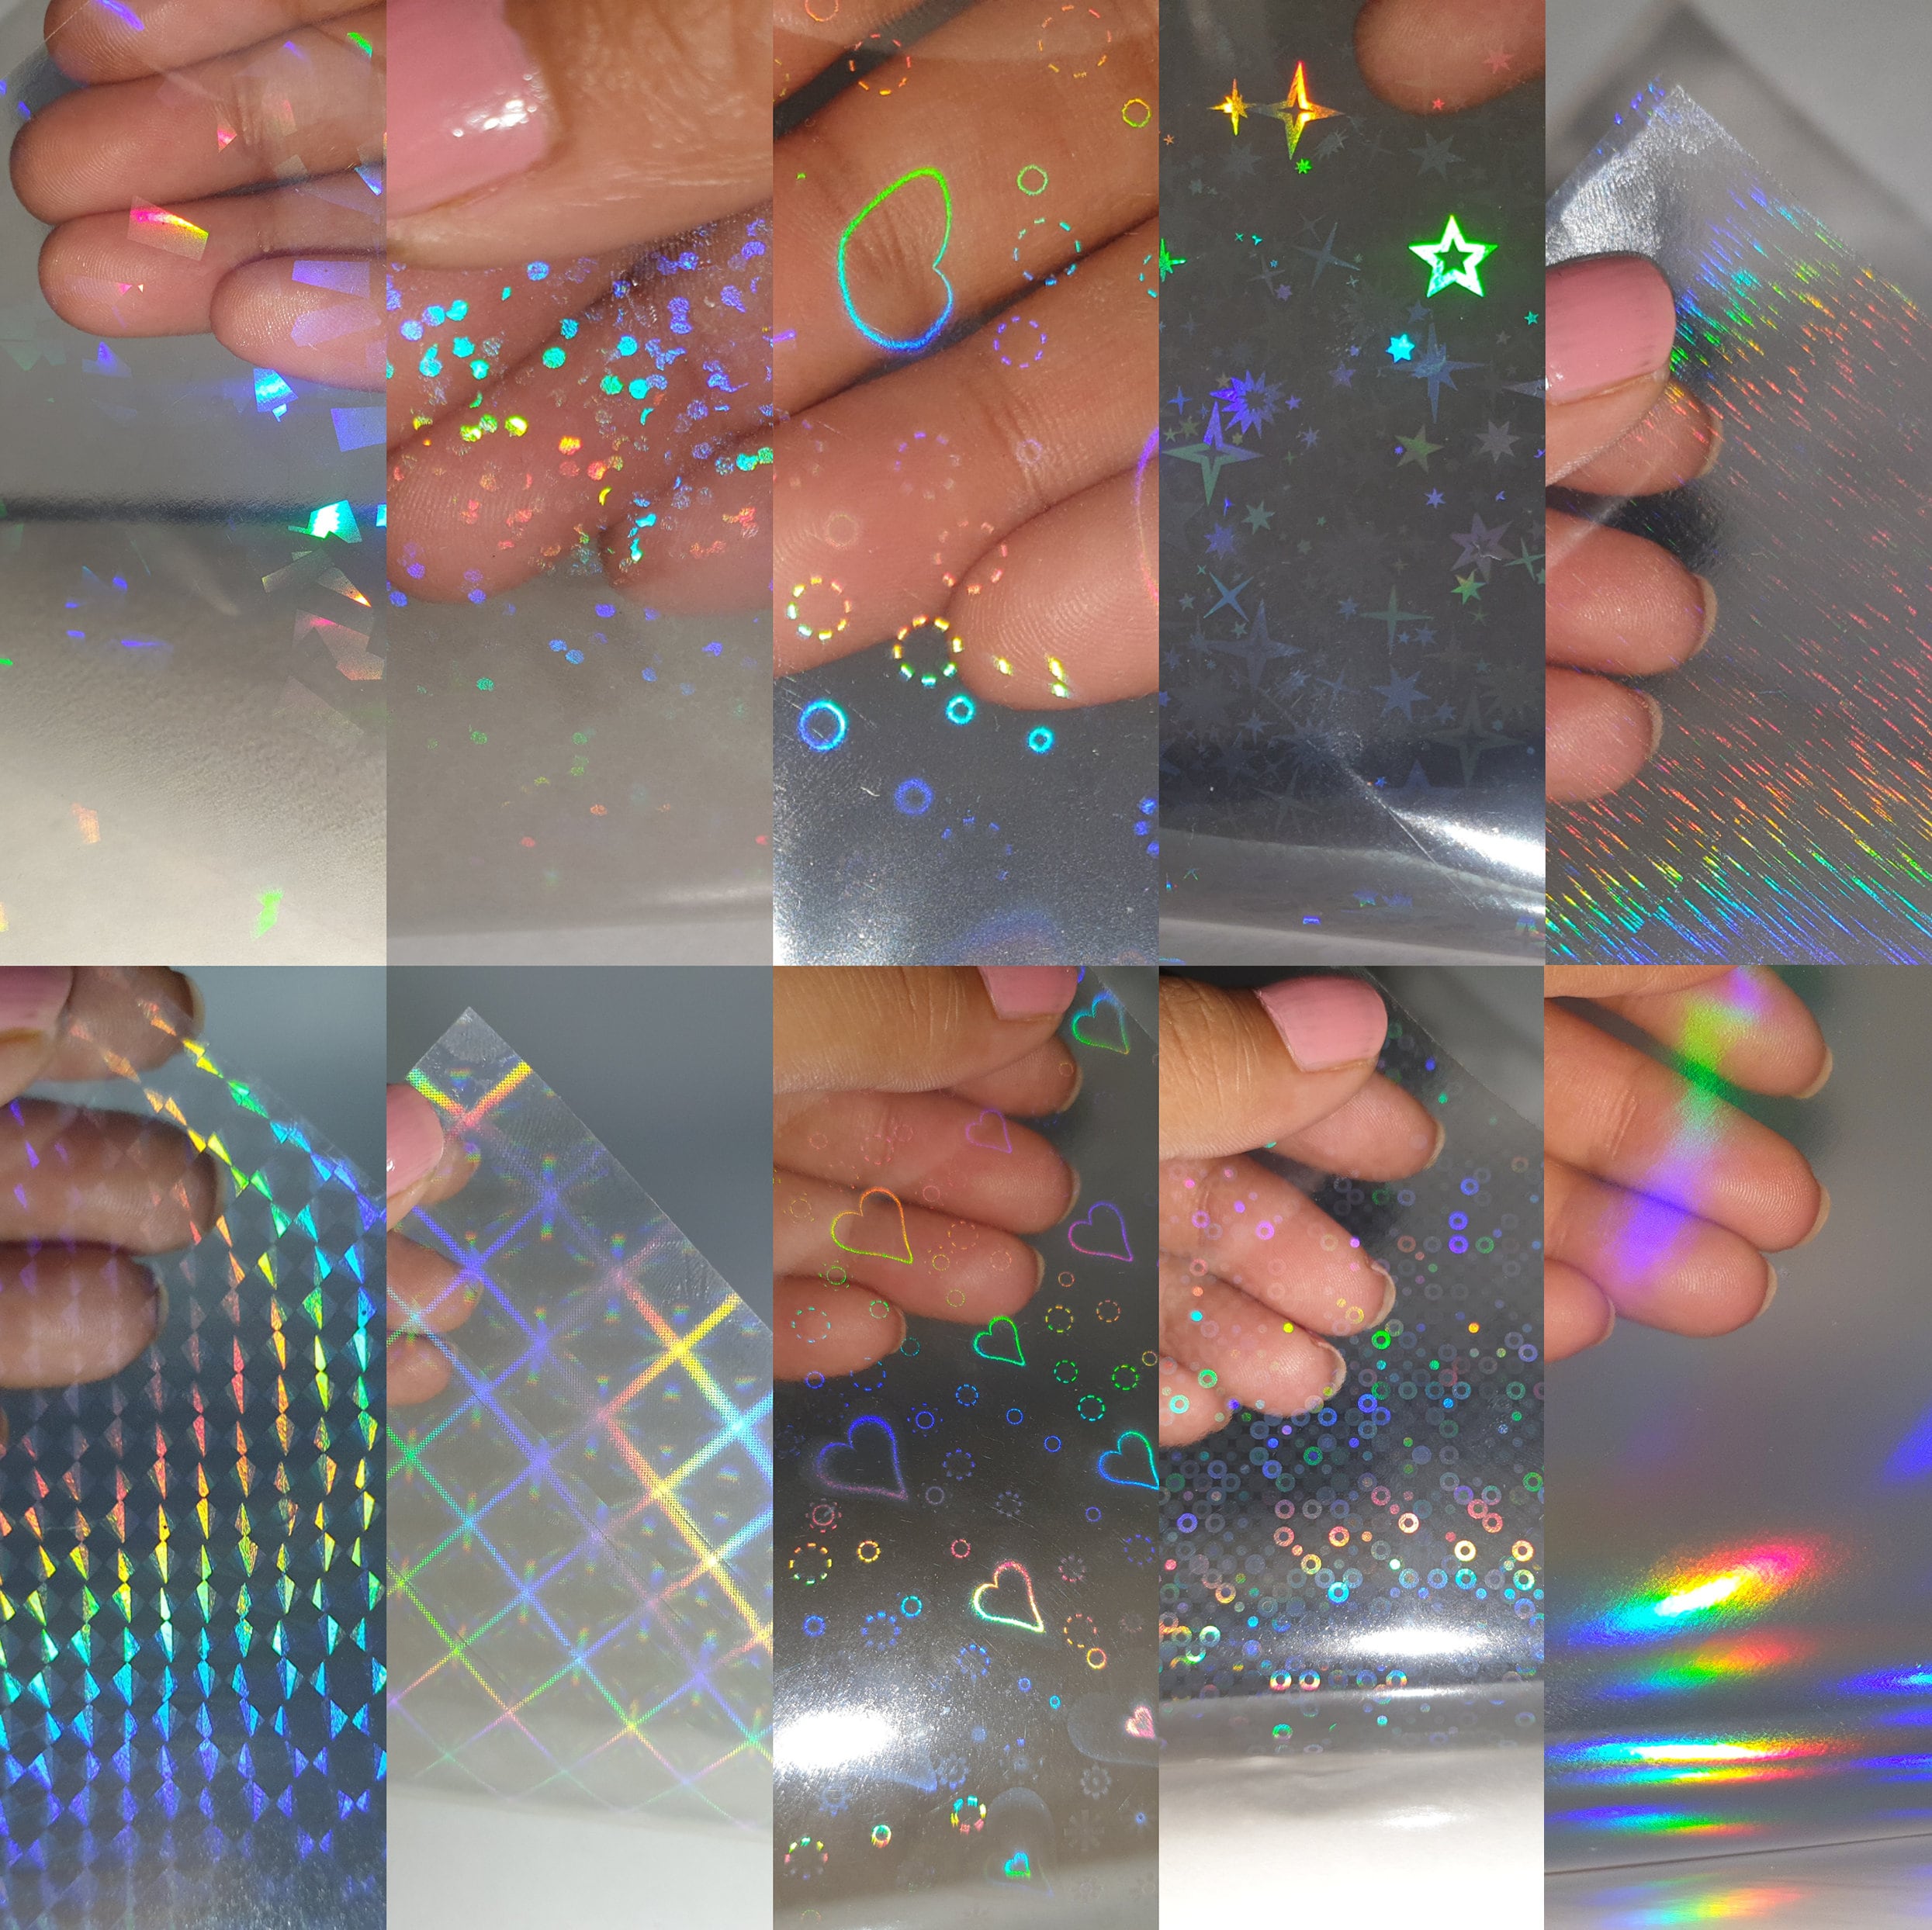 Anruyi 30 Feuilles Papier Autocollant Holographique Transparent,  Autocollant Holographique Transparent Papier Autocollant Holographique  Stickers